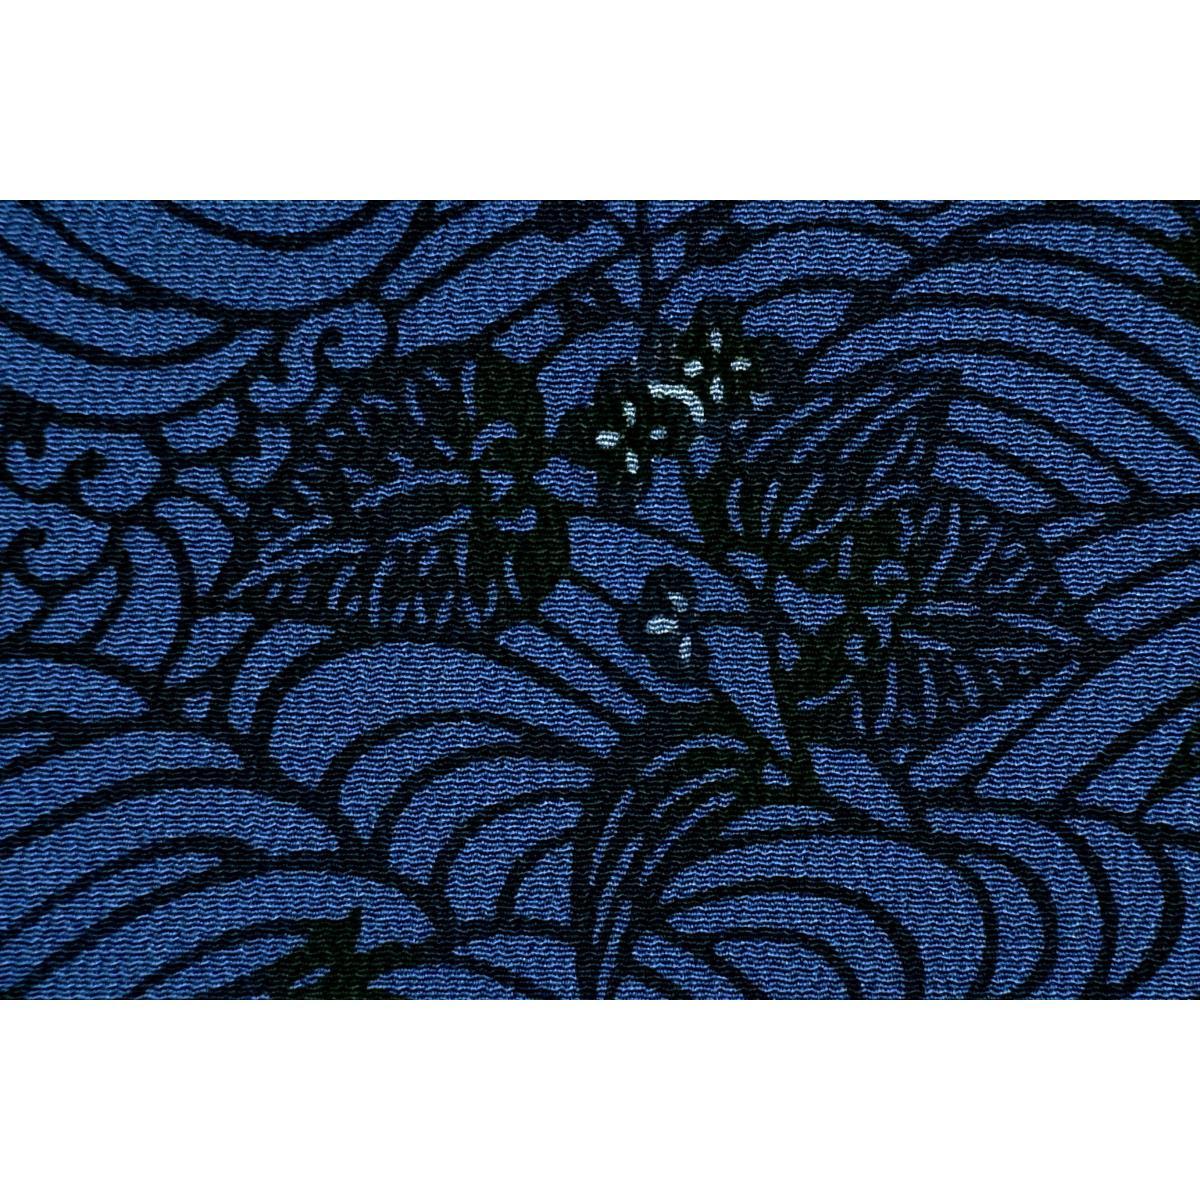 [Unused items] Nagoya obi Morihiro Kinjo Zento pattern